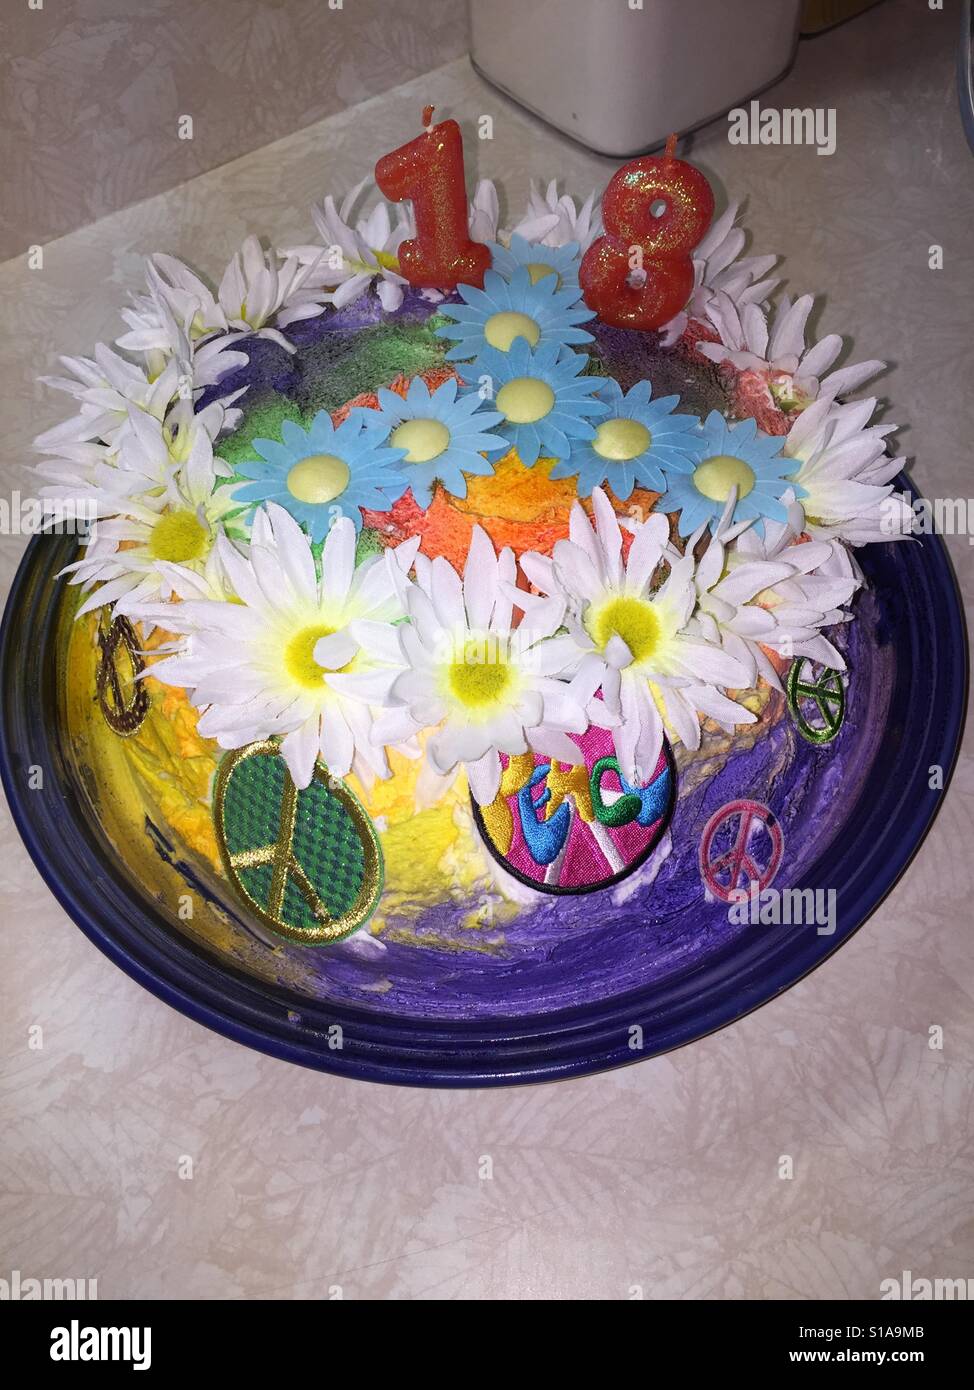 Filles 18e anniversaire gâteau était aussi tie dye dans tout de même. Banque D'Images